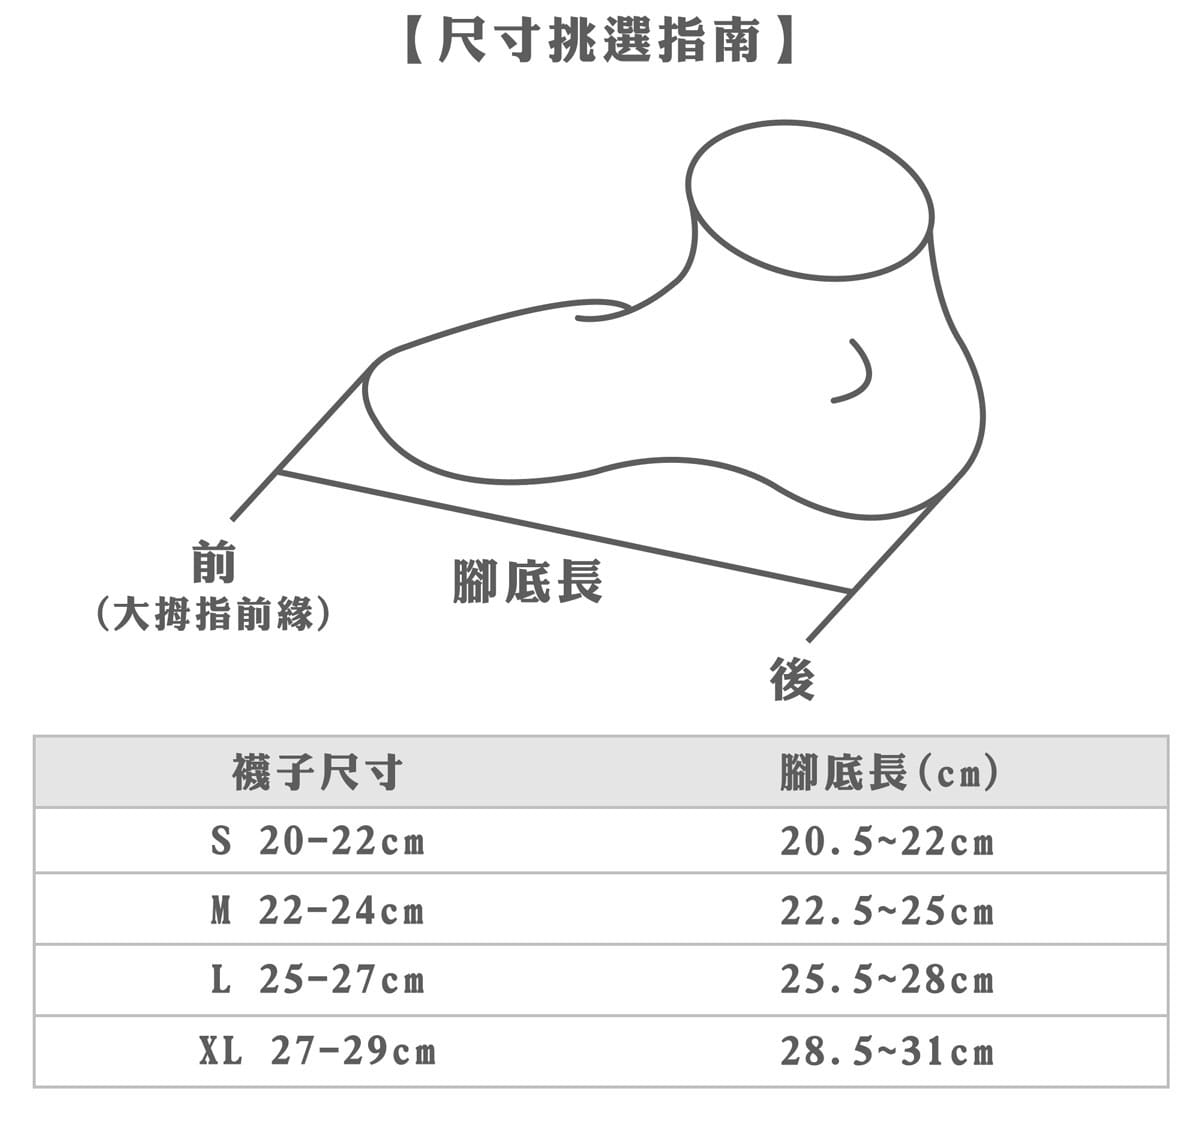 【力美特機能襪】三紋船型襪(紅) 1